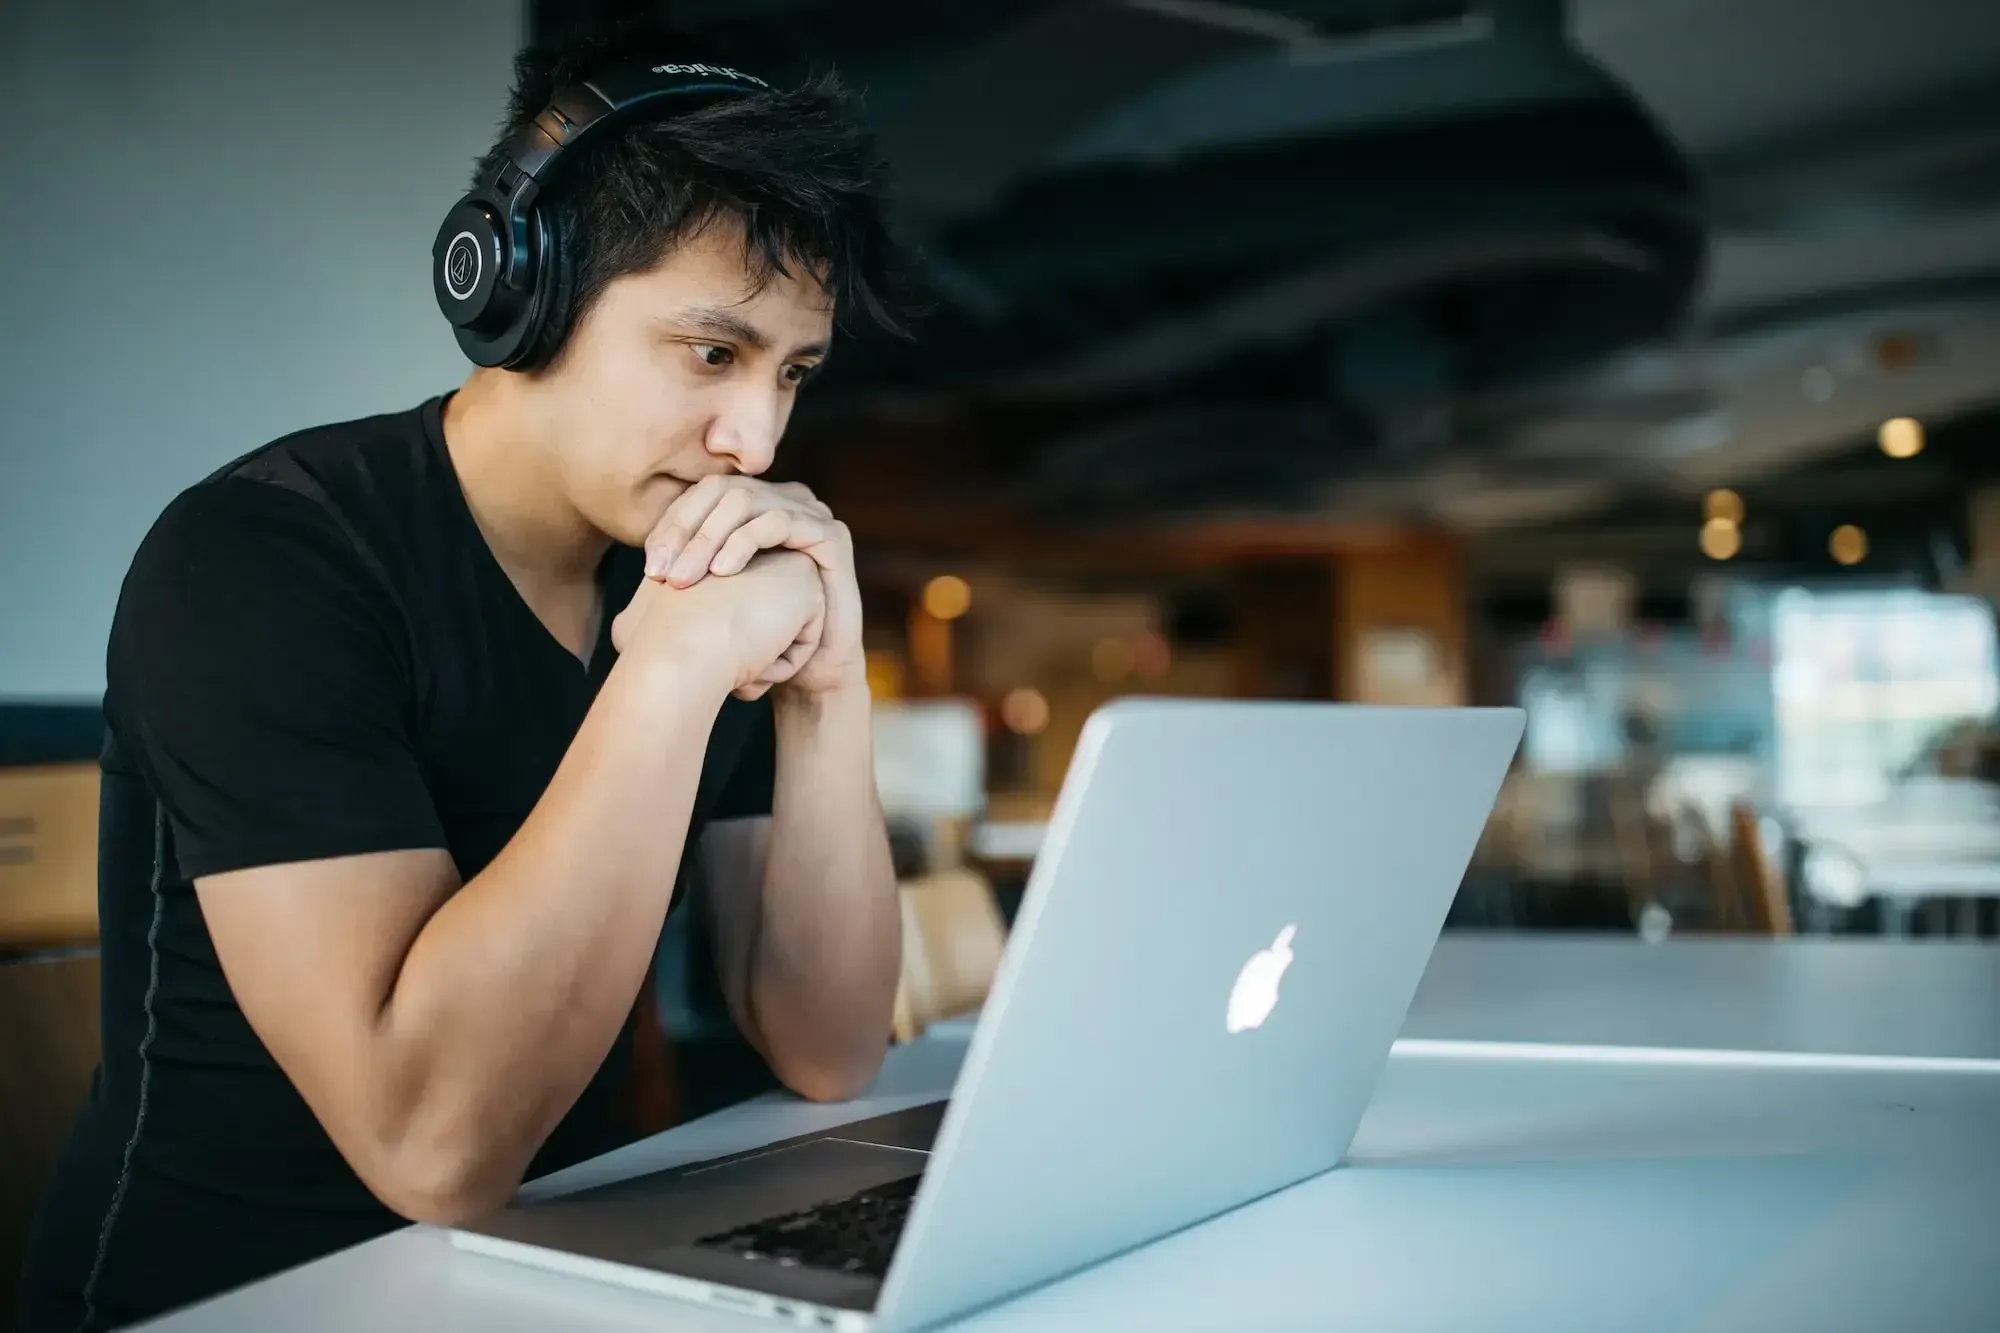 Mann mit schwarzem Hemd und Kopfhörern, der vor sich auf seinen Laptop schaut und sich mit den Händen am Kinn konzentriert.